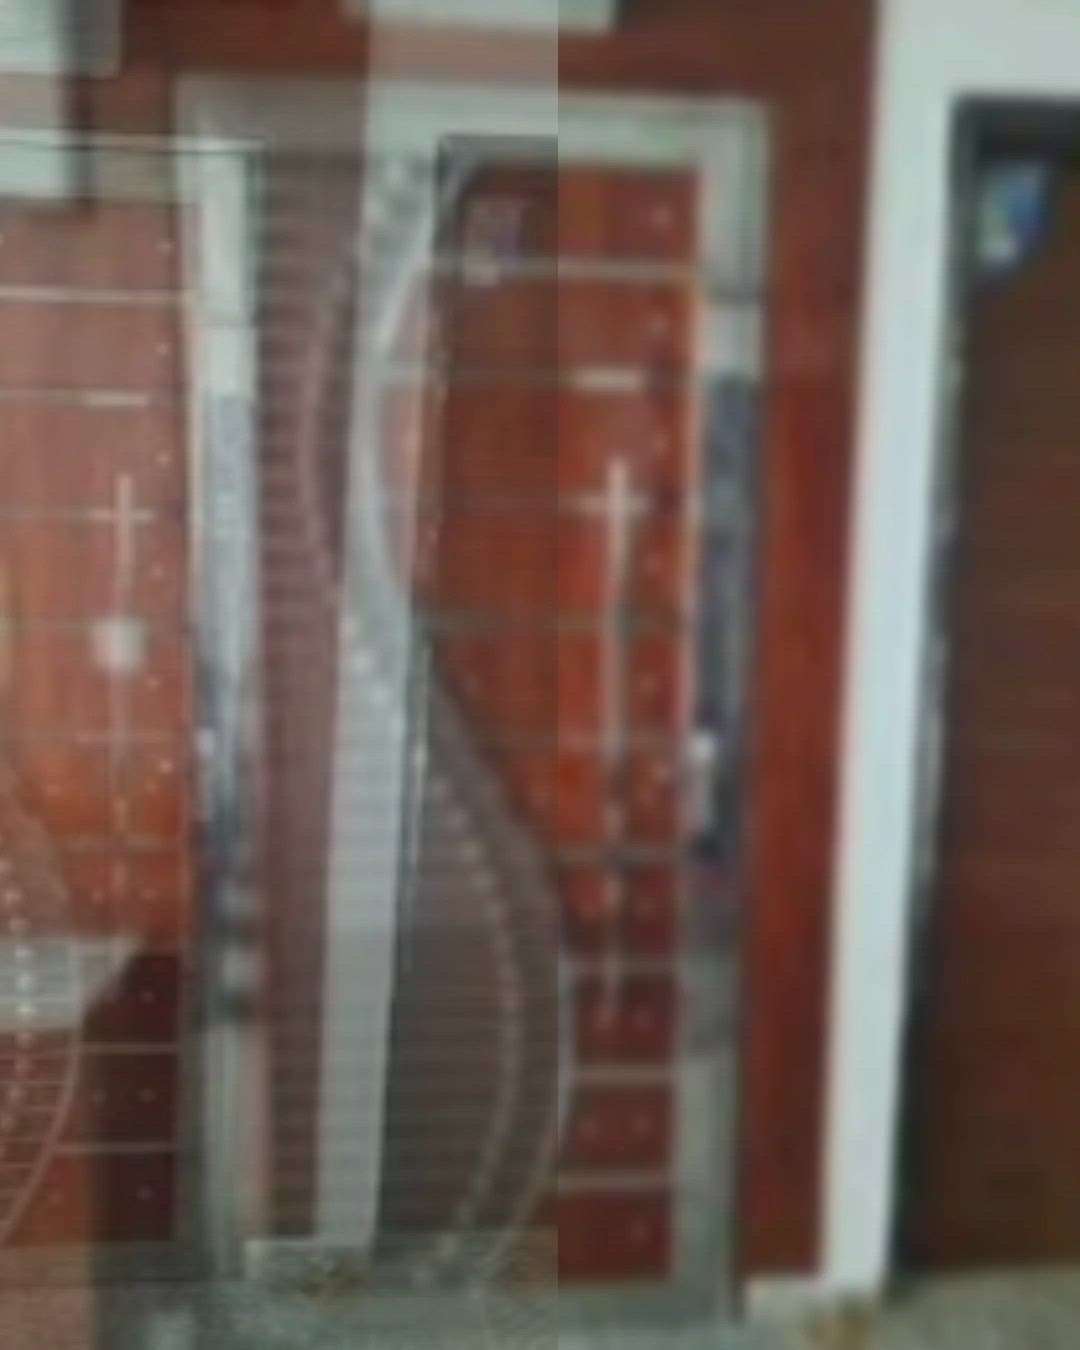 ss gate design single door safety doors ,, Bismillah fabrication.👇👇
.. contact ☎️👉 8285562500
.
.
 #koloviral  #koloshortvideo  #kolopost  #koloapp  #koloviral  #videodoorintercom  #Steeldoor 
 #kolointeriordesign